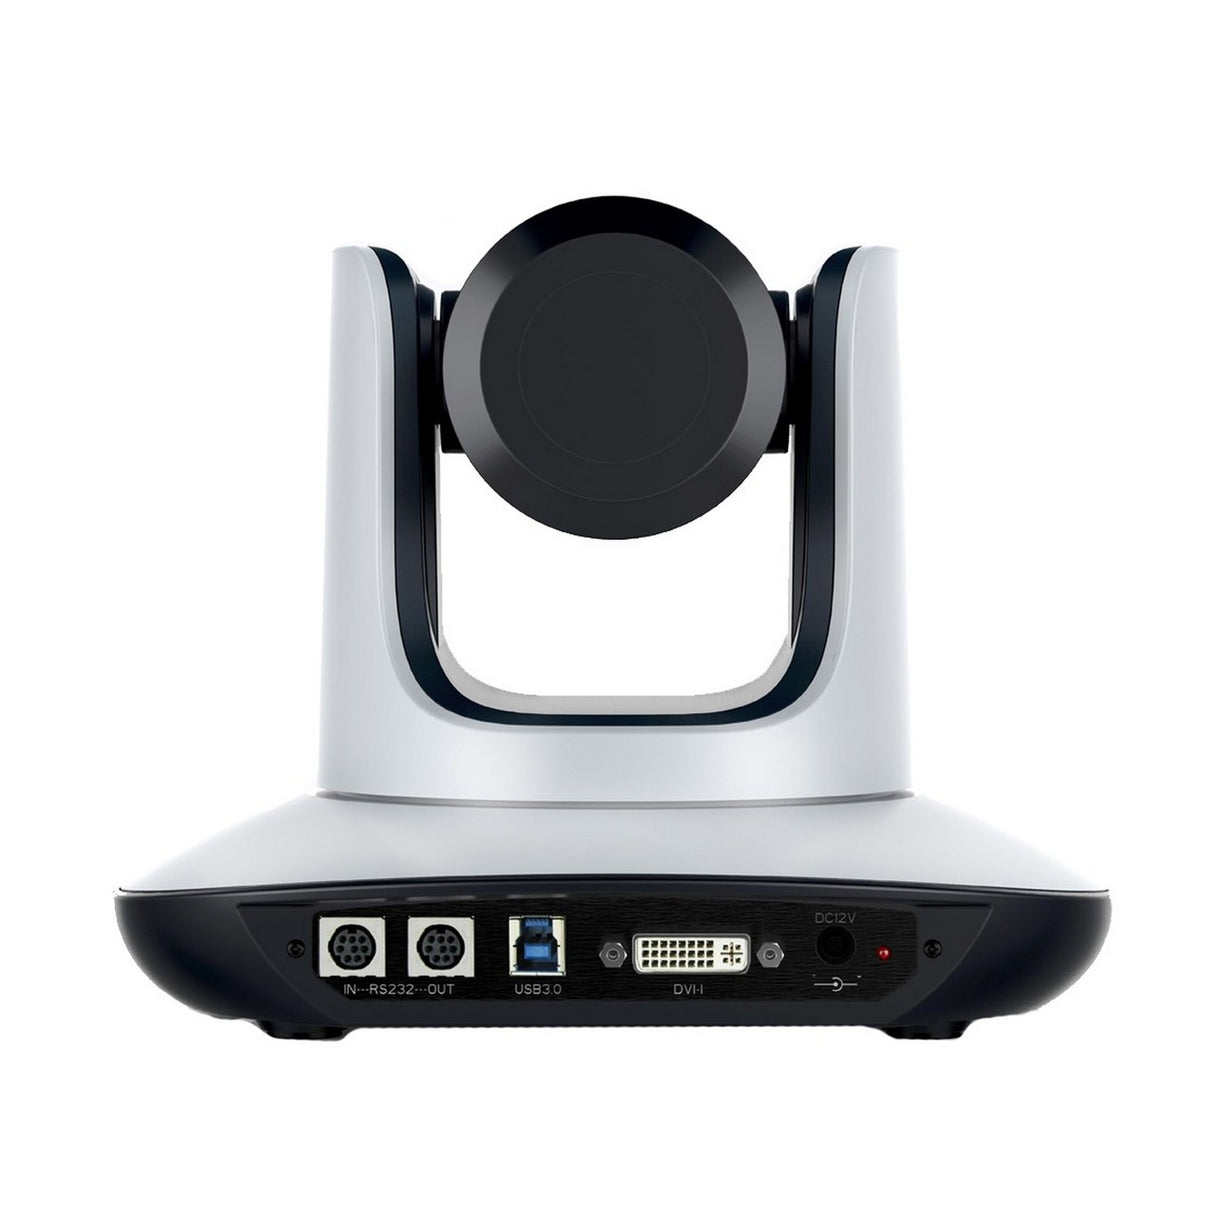 VDO360 The Saber DVI-I/USB 3.0 PTZ Camera